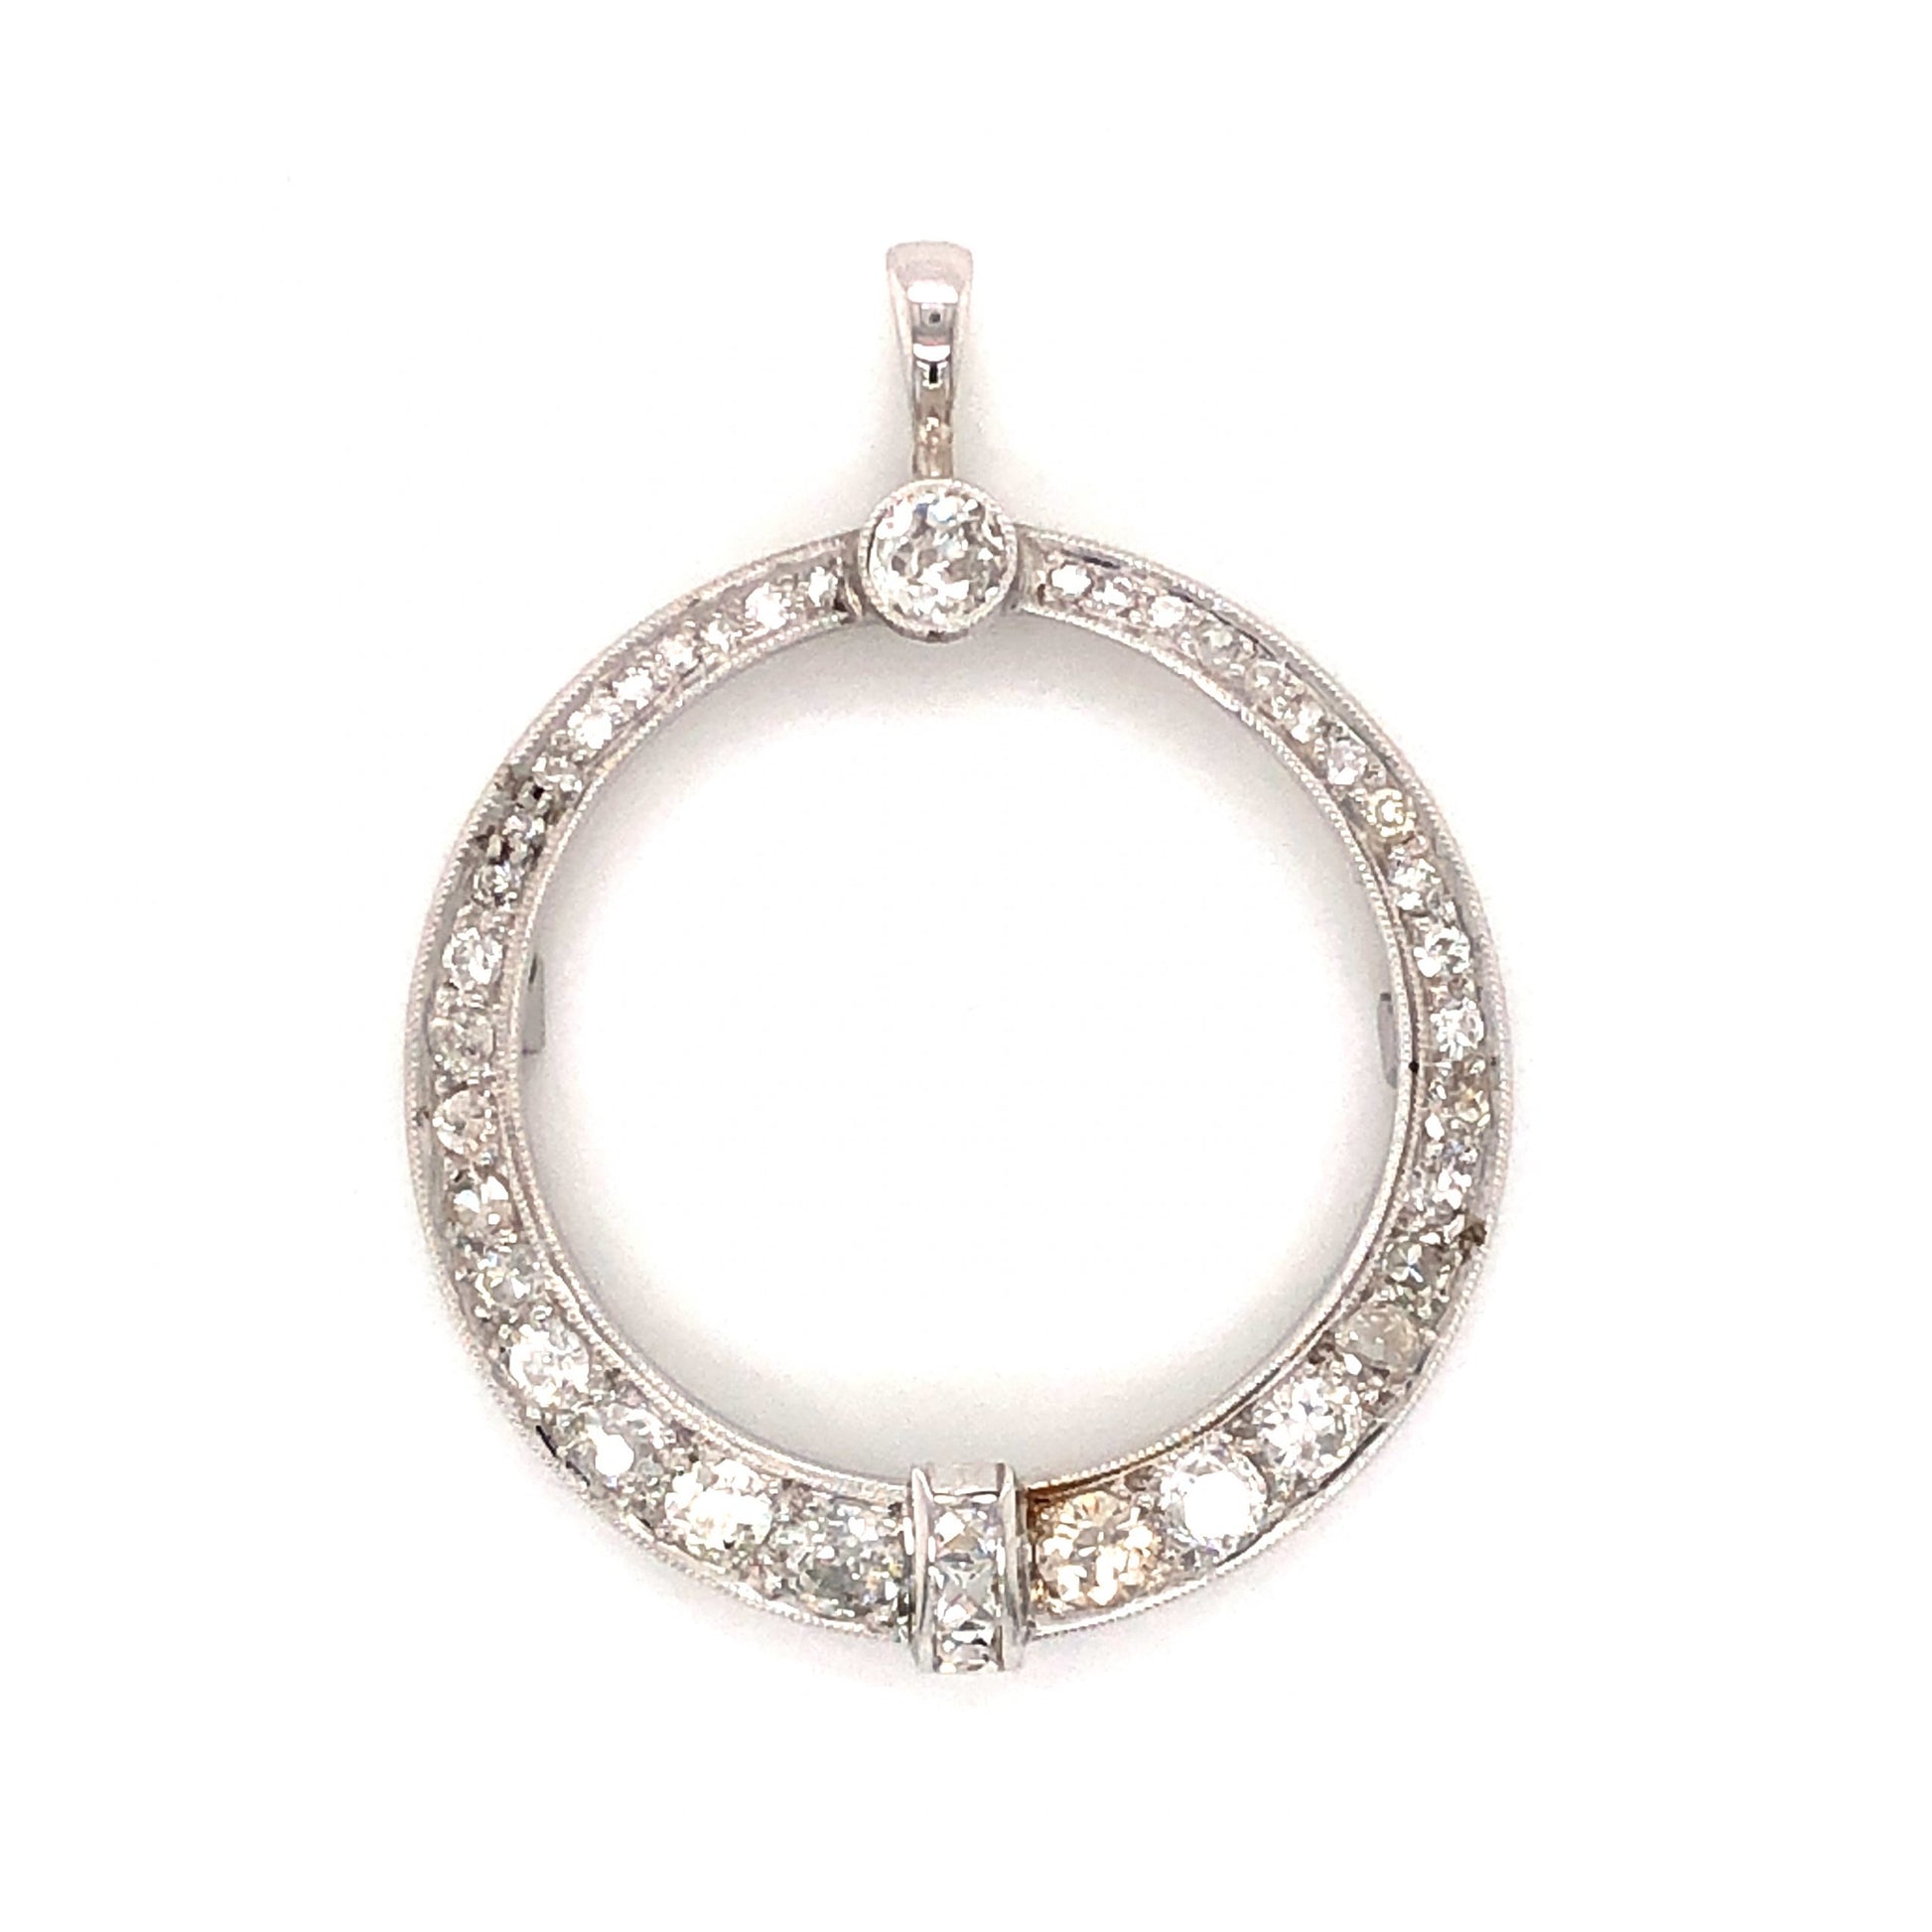 1.61 Antique Art Deco Diamond Pendant in Platinum & 14k White Gold